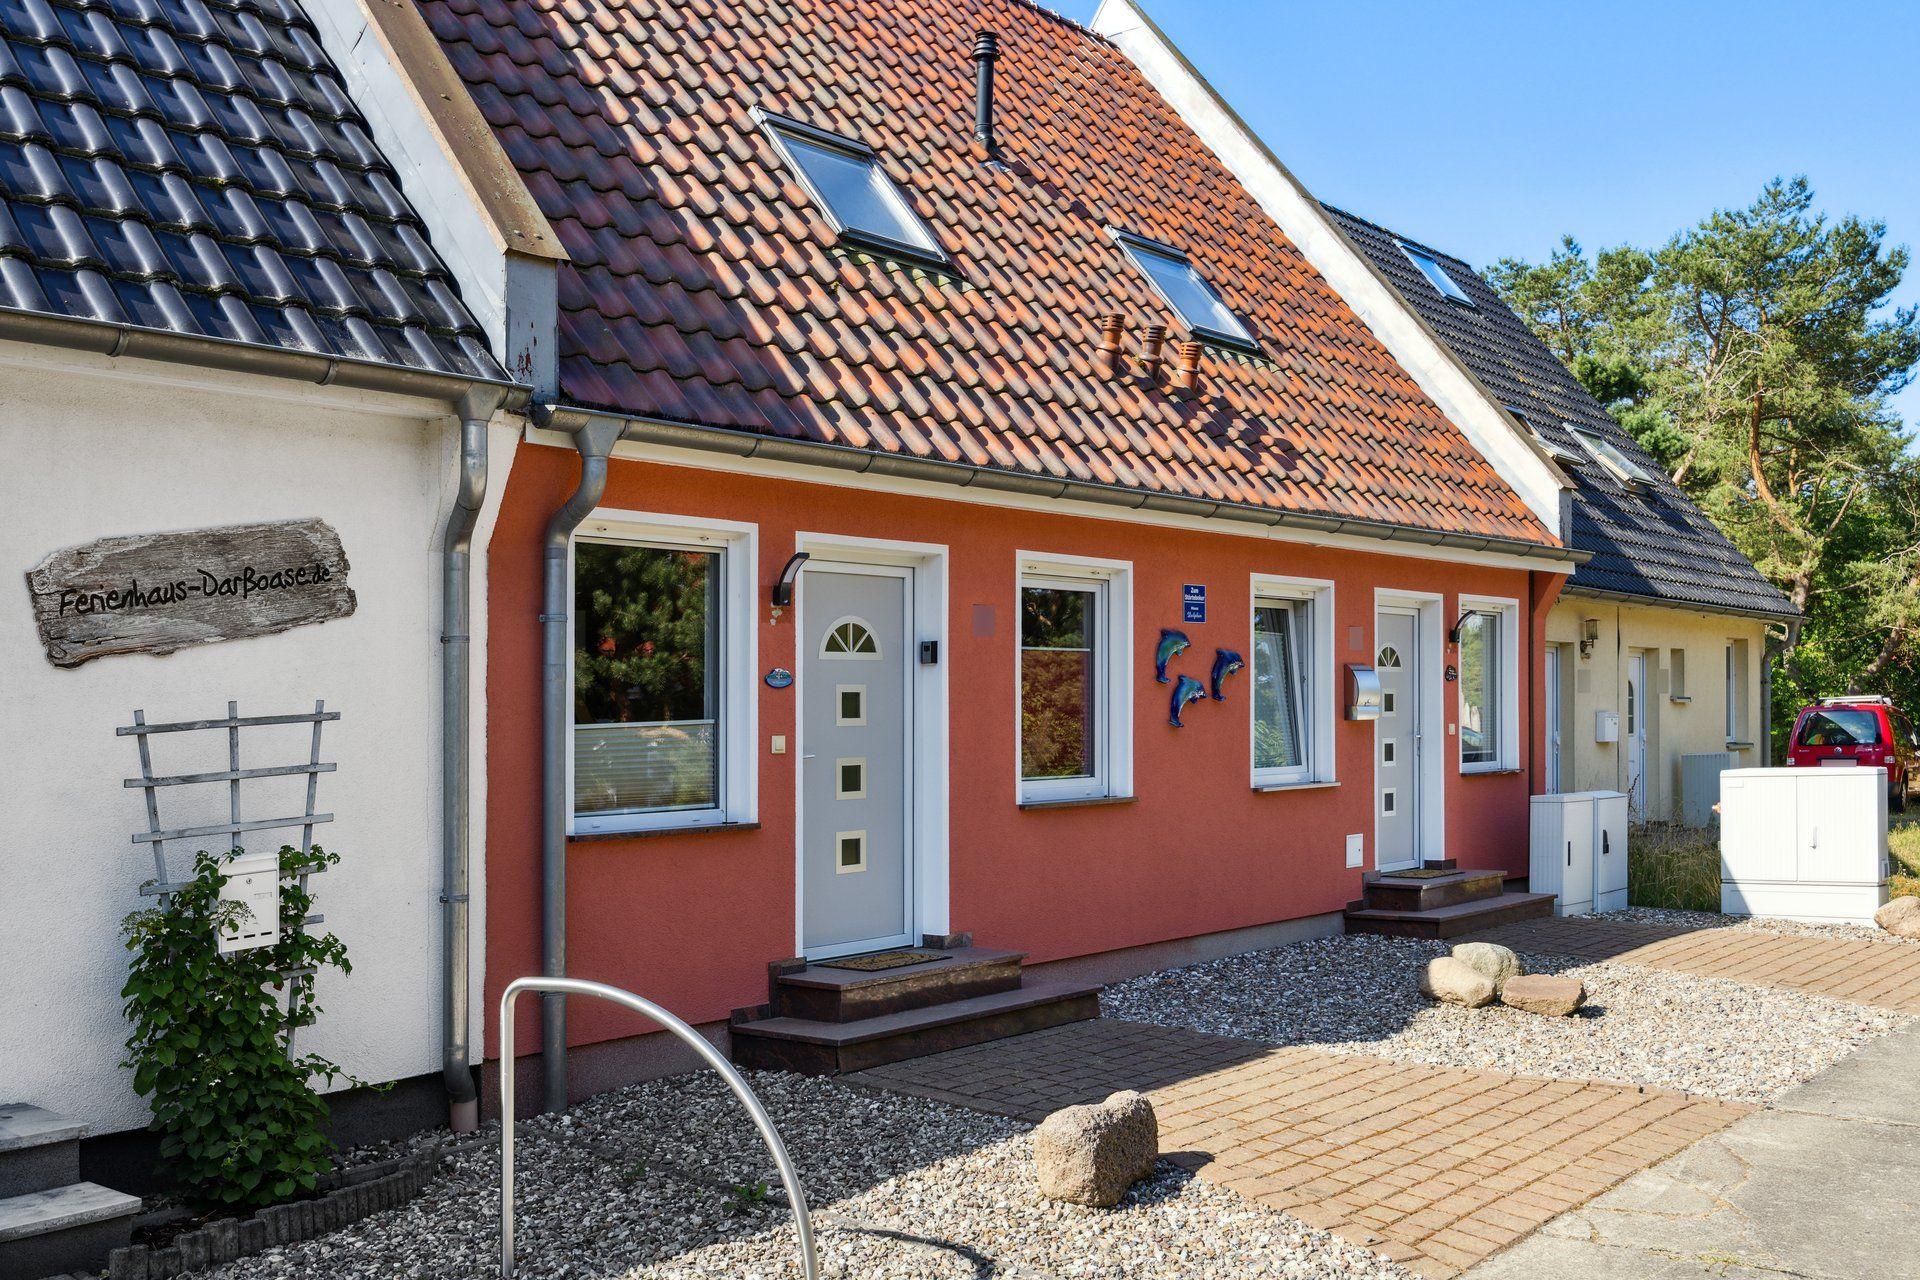 Ferienhaus in Pruchten mit Terrasse, Grill und Gar   Fischland Darß Zingst